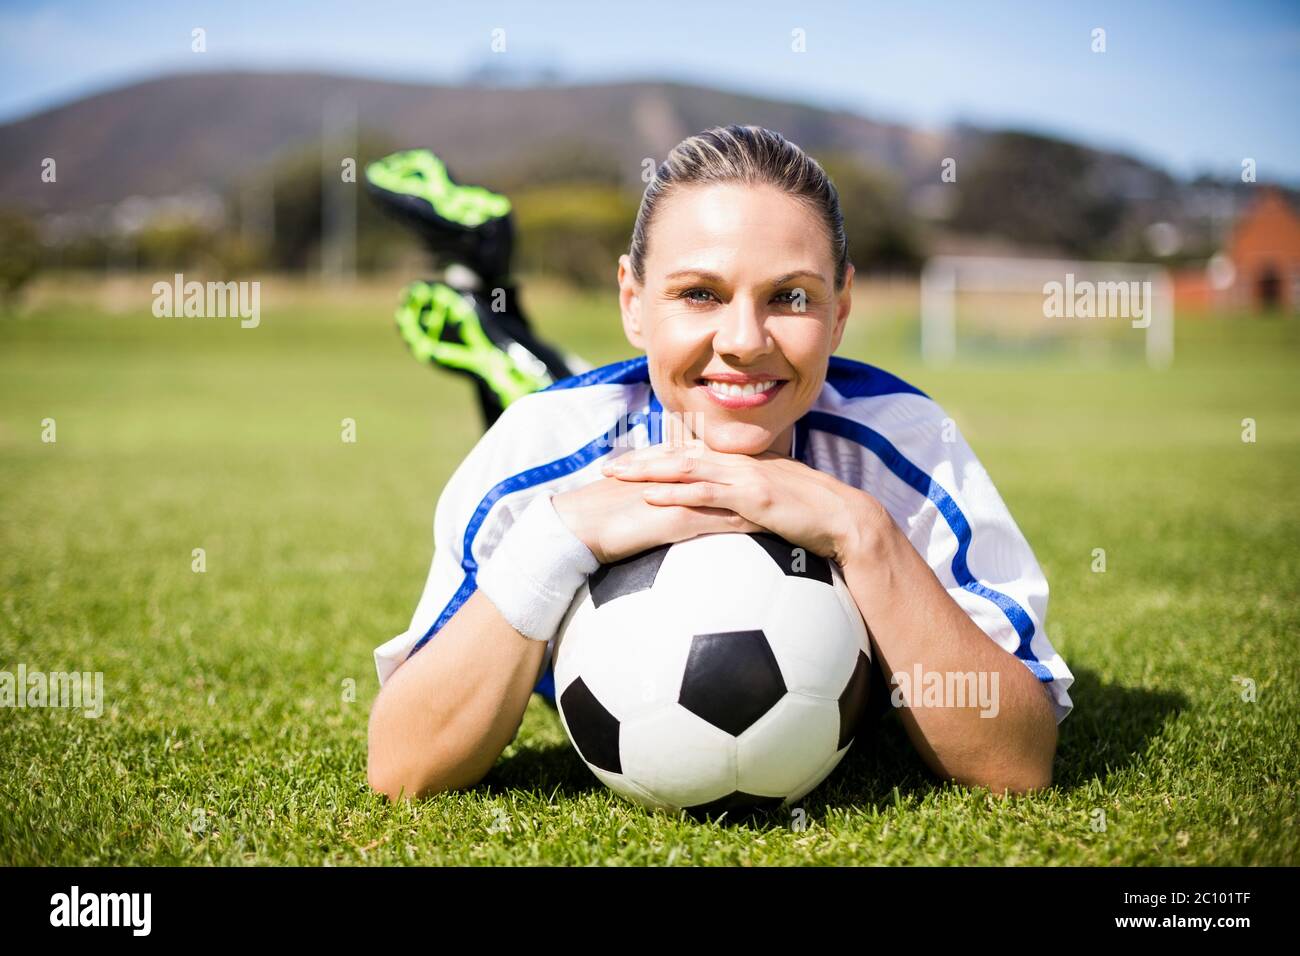 Portrait de joueur de football féminin allongé sur terrain de football avec ballon Banque D'Images